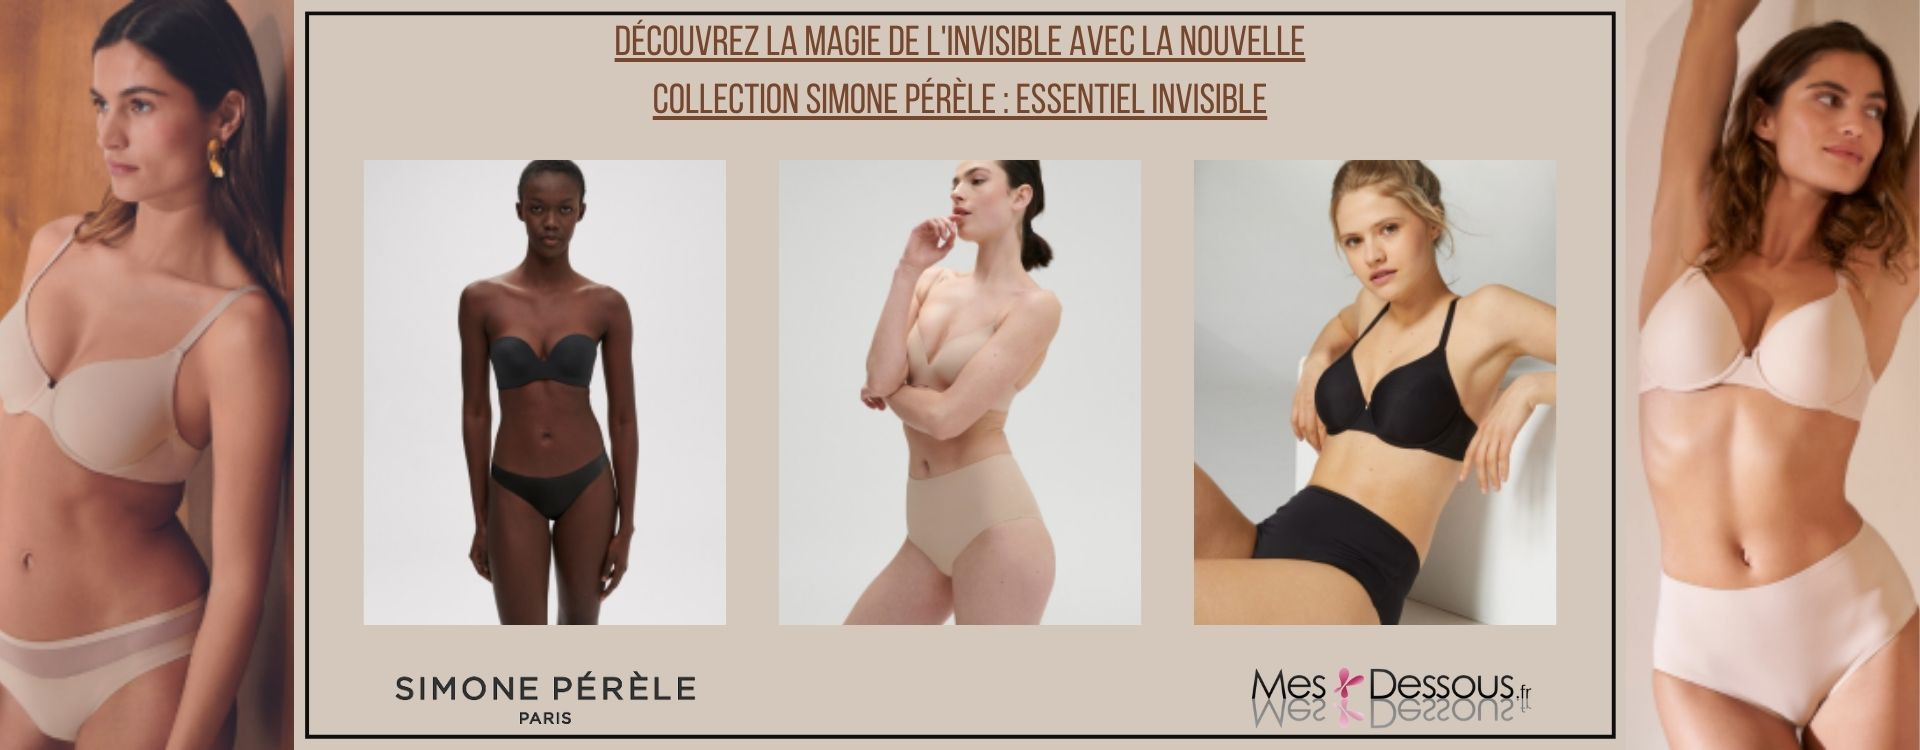 Découvrez la Magie de l'Invisible avec la Nouvelle Collection Simone Pérèle : Essentiel Invisible